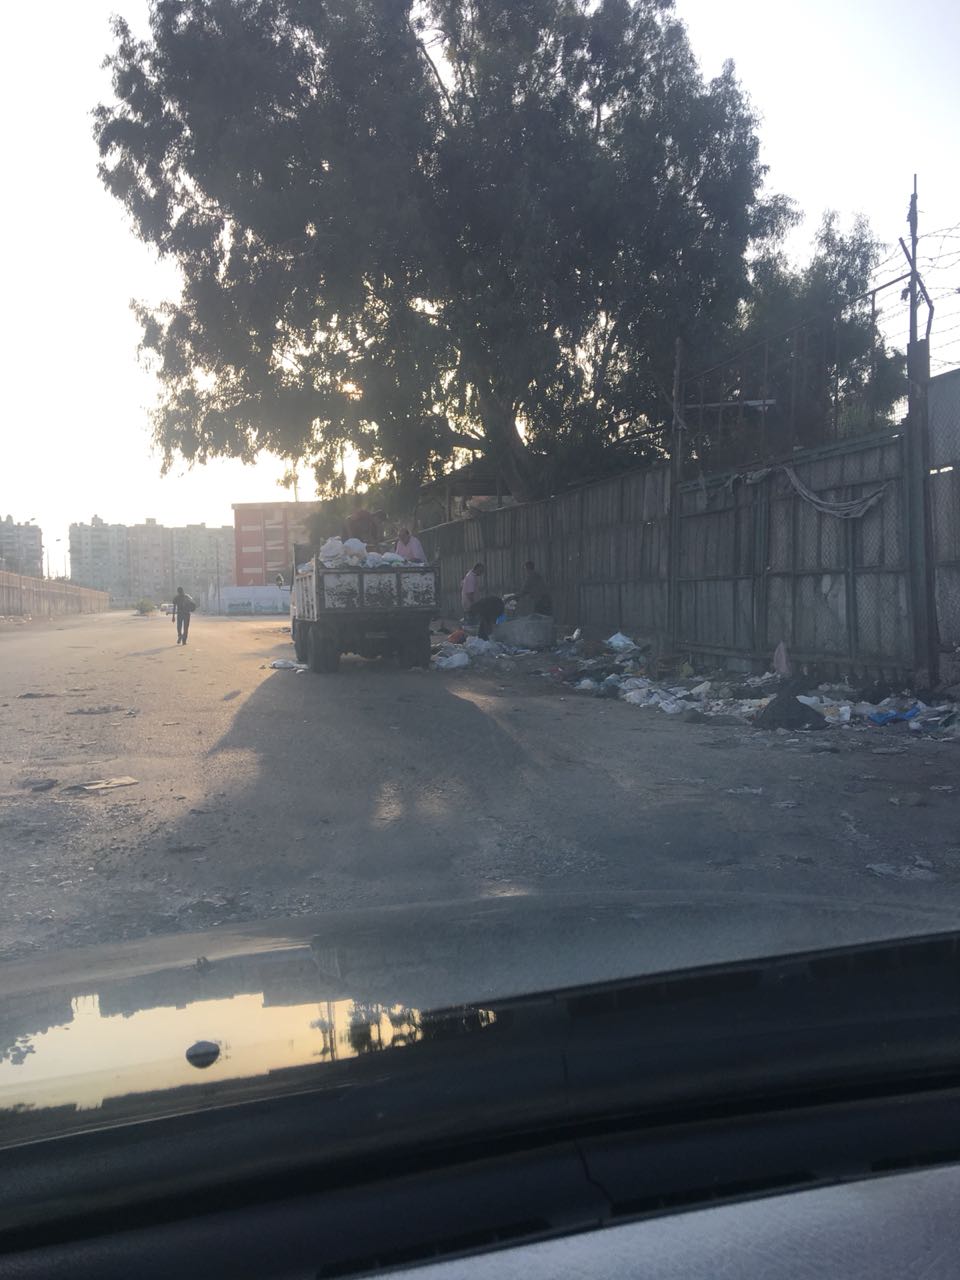  سيارات النظافة تفرغ حمولتها من القمامة خلف منطقة الجولف (3)